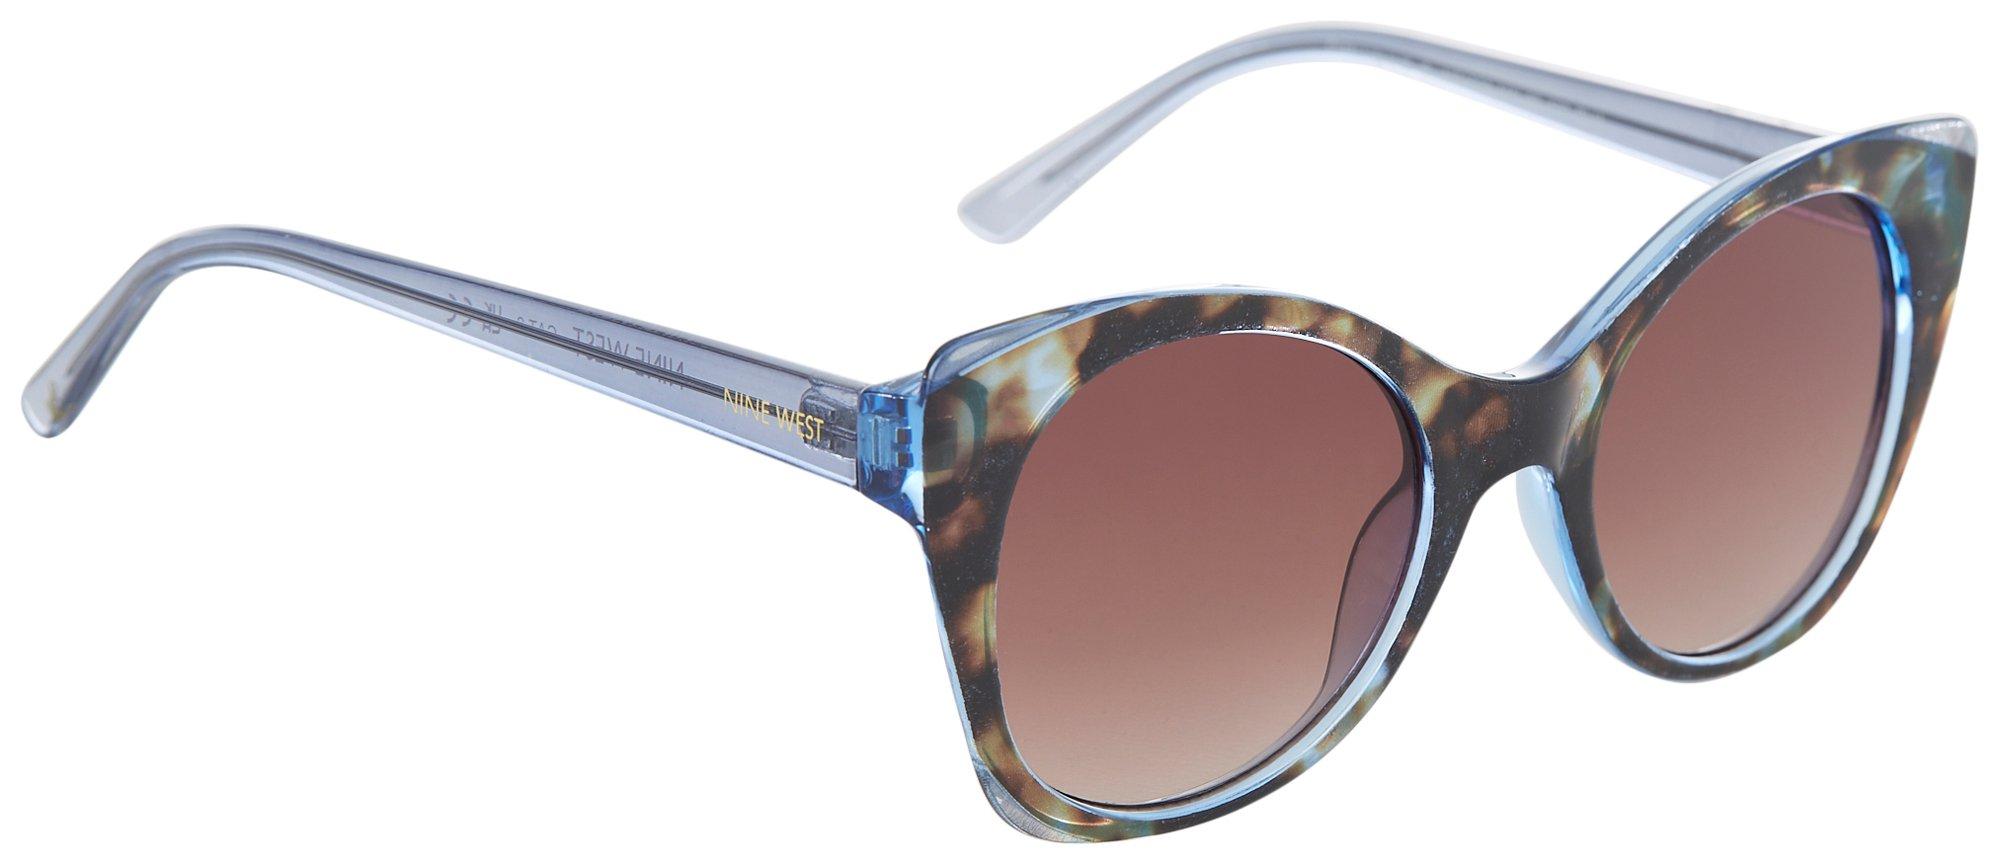 Sunglasses Granite | New Florida Jones York Bealls Rectangular Womens